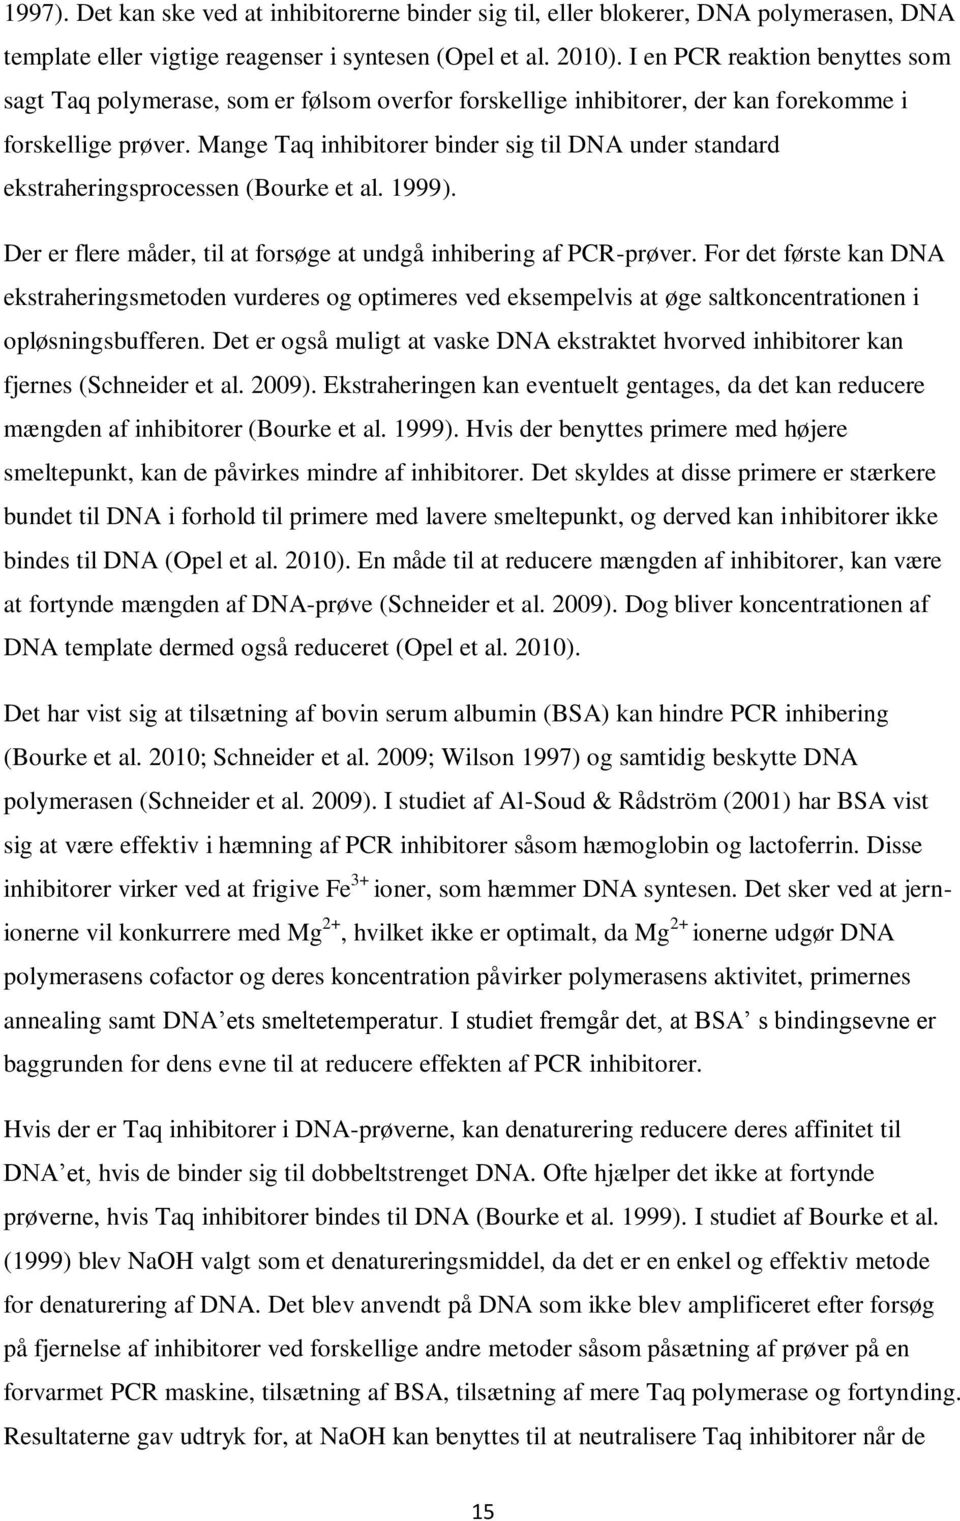 Mange Taq inhibitorer binder sig til DNA under standard ekstraheringsprocessen (Bourke et al. 1999). Der er flere måder, til at forsøge at undgå inhibering af PCR-prøver.